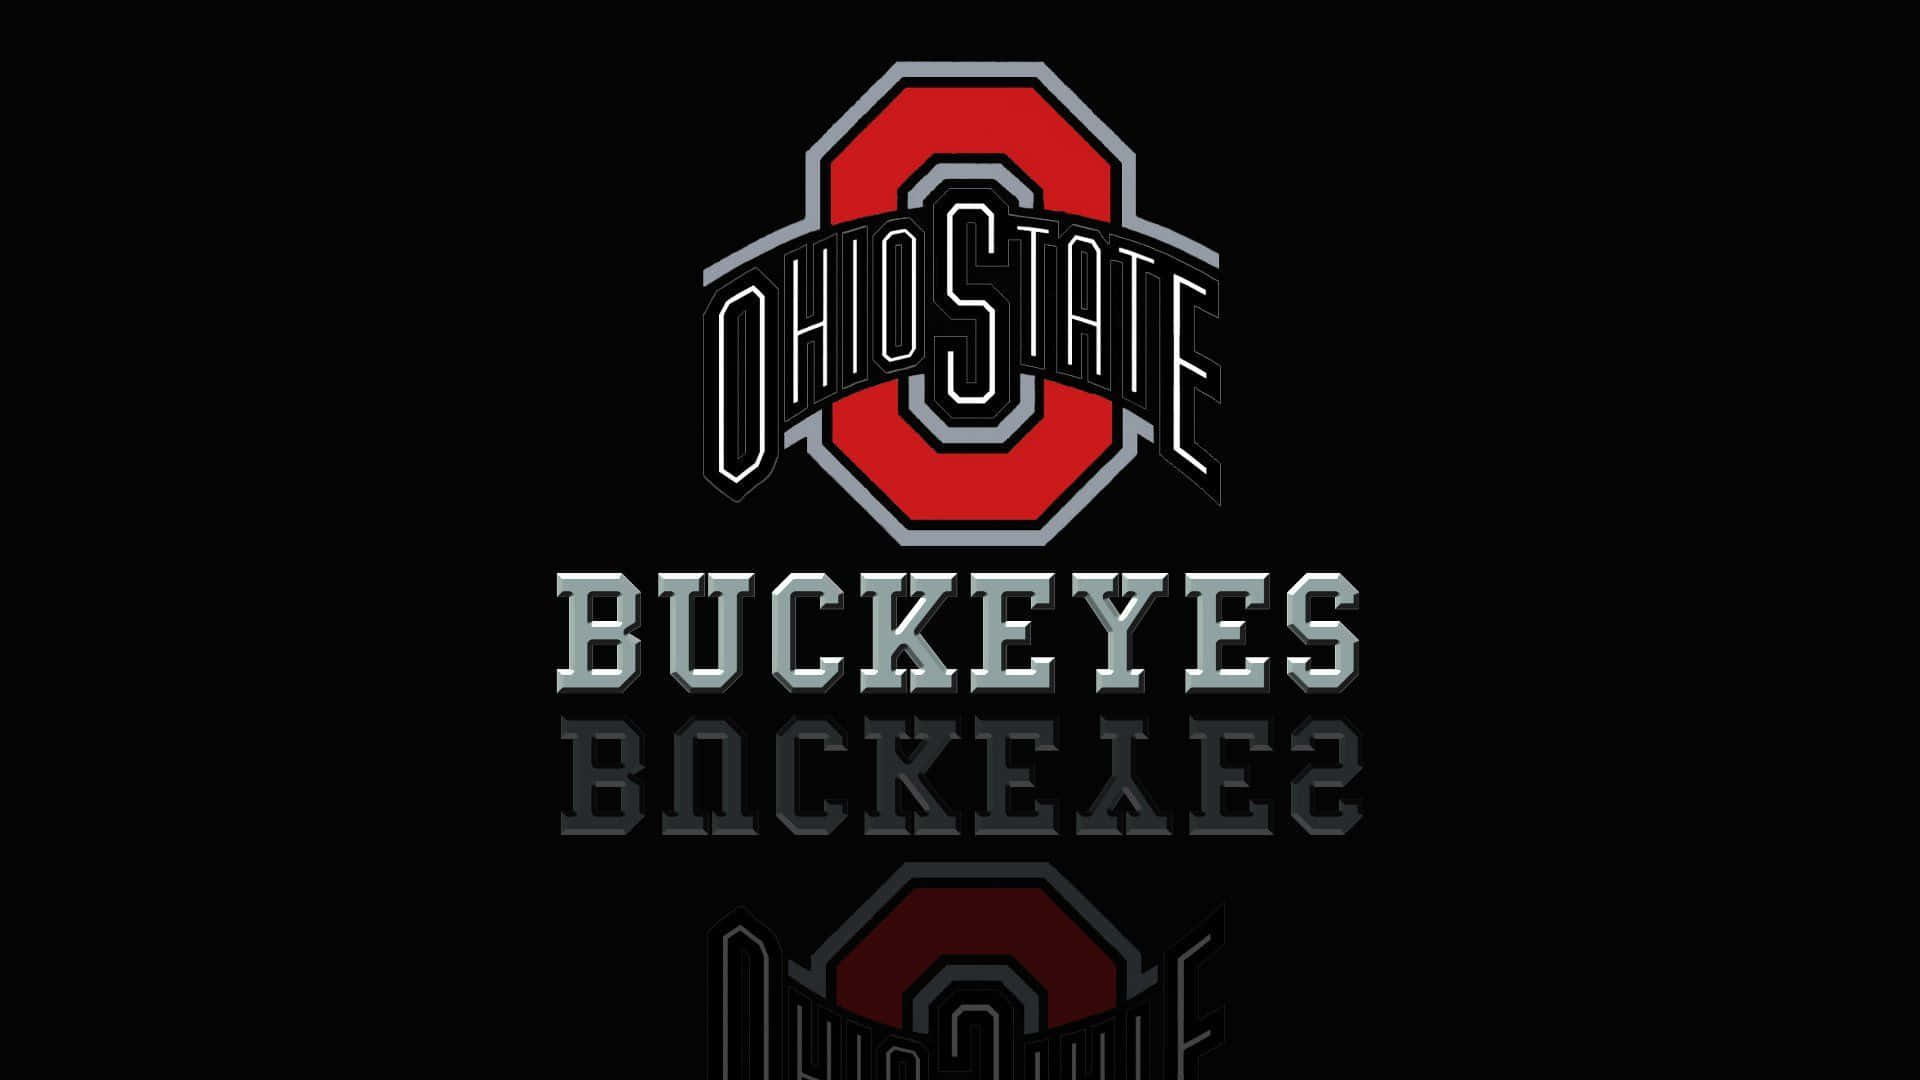 Schwarzeoberfläche Reflektiert Das Logo Der Buckeyes Von Ohio State Wallpaper